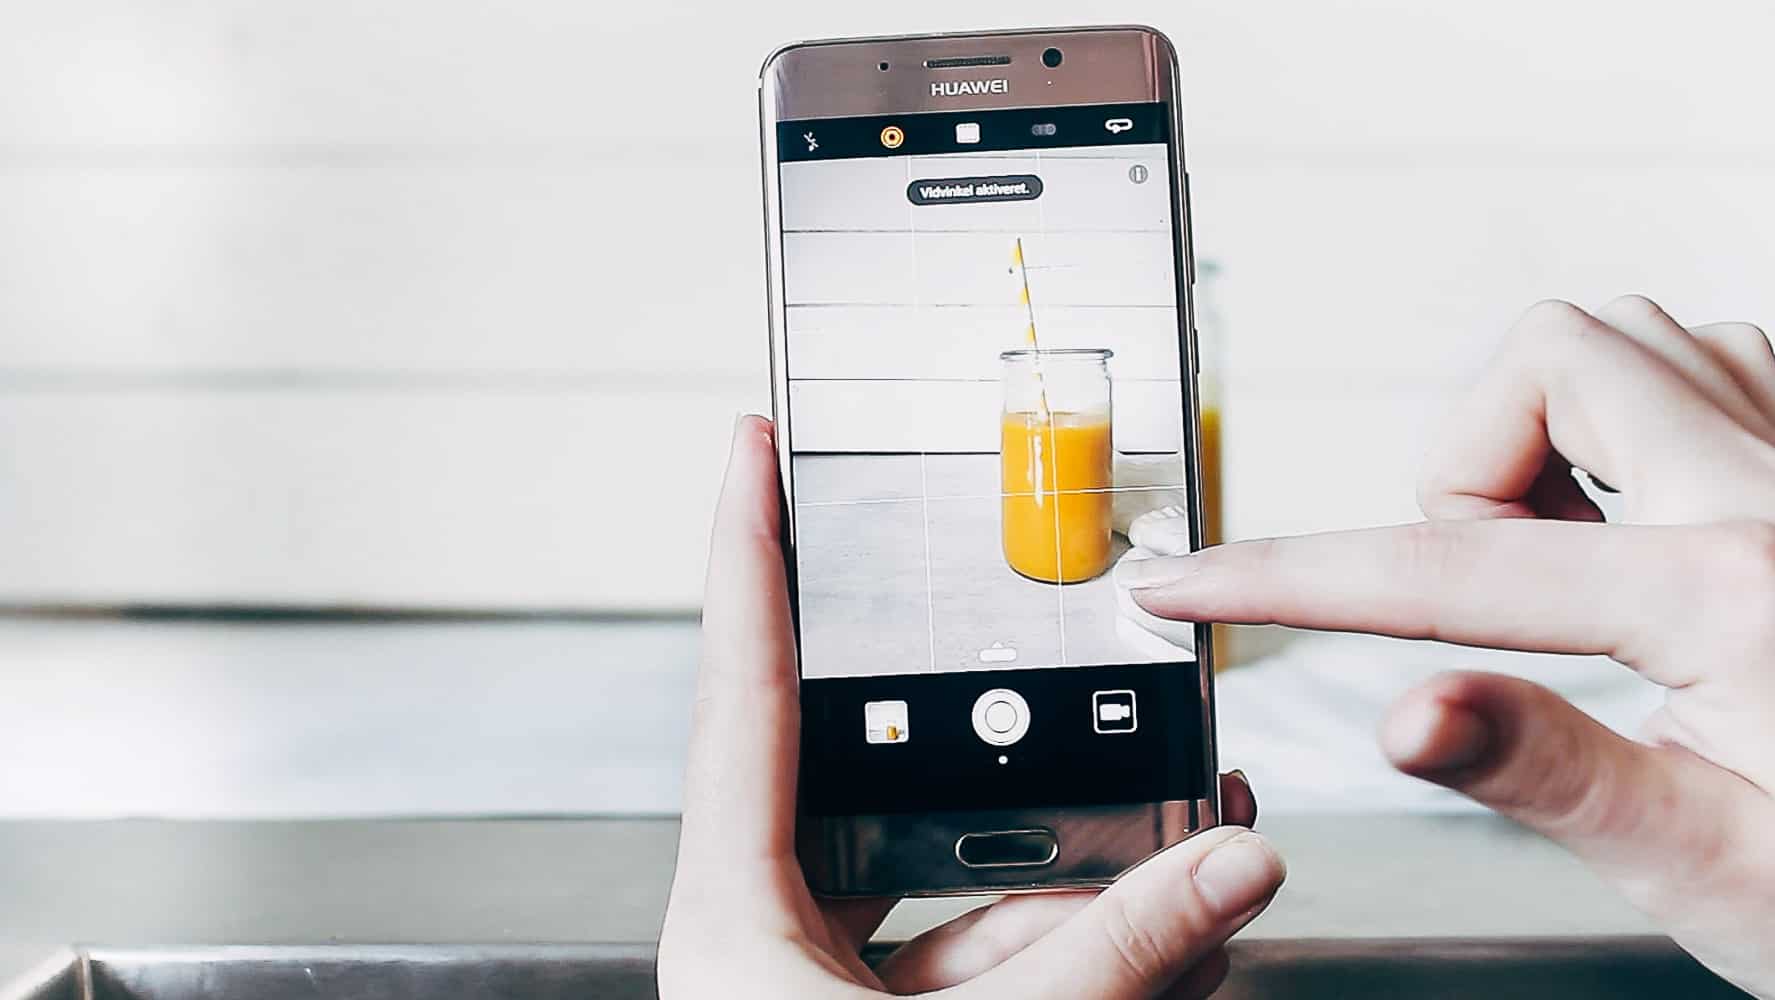 Huawei mate 9 pro - tag bedre madbilleder med smartphone